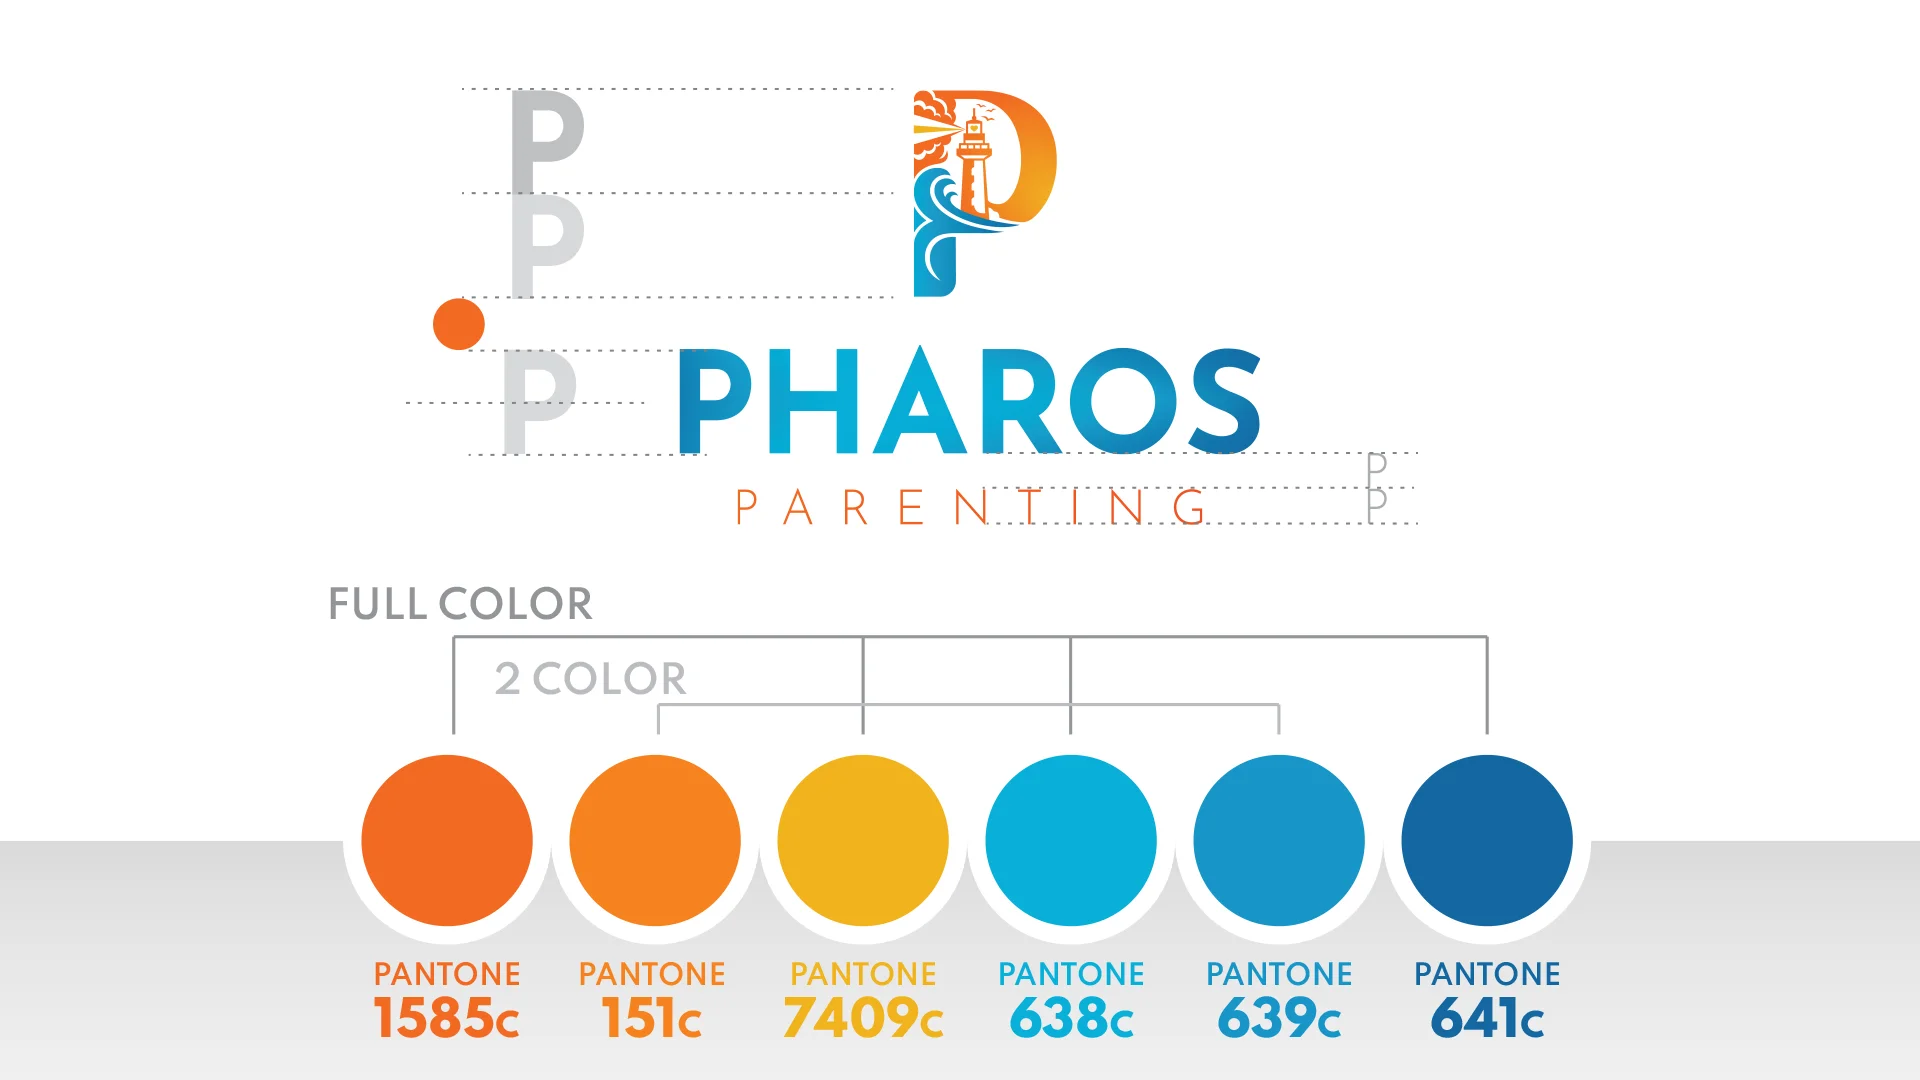 pharos parenting logo 2